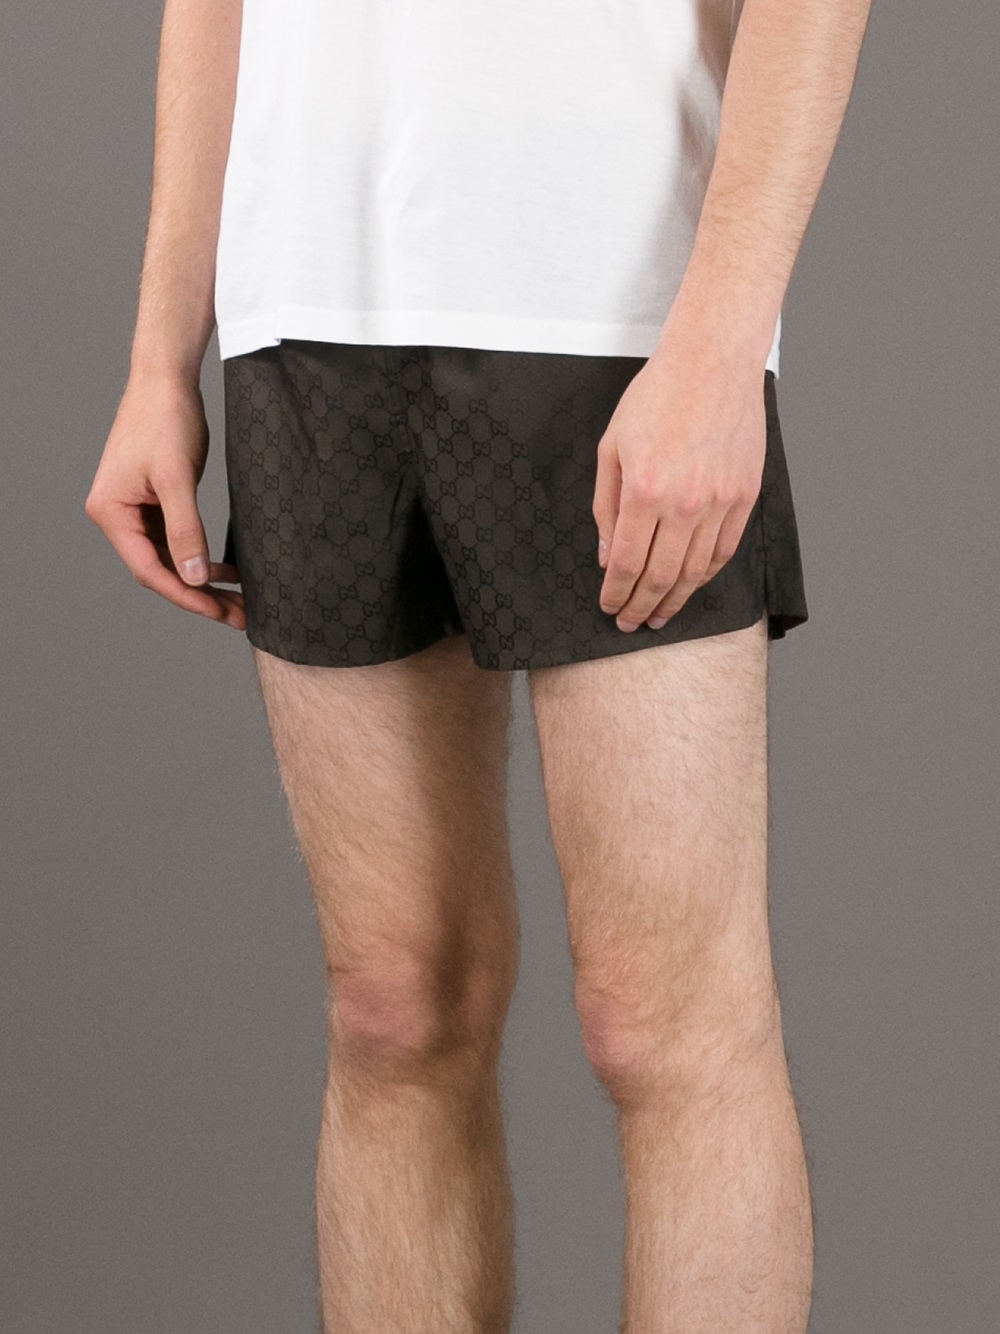 Gucci Black Leather Trim Monogram Shorts - Farfetch